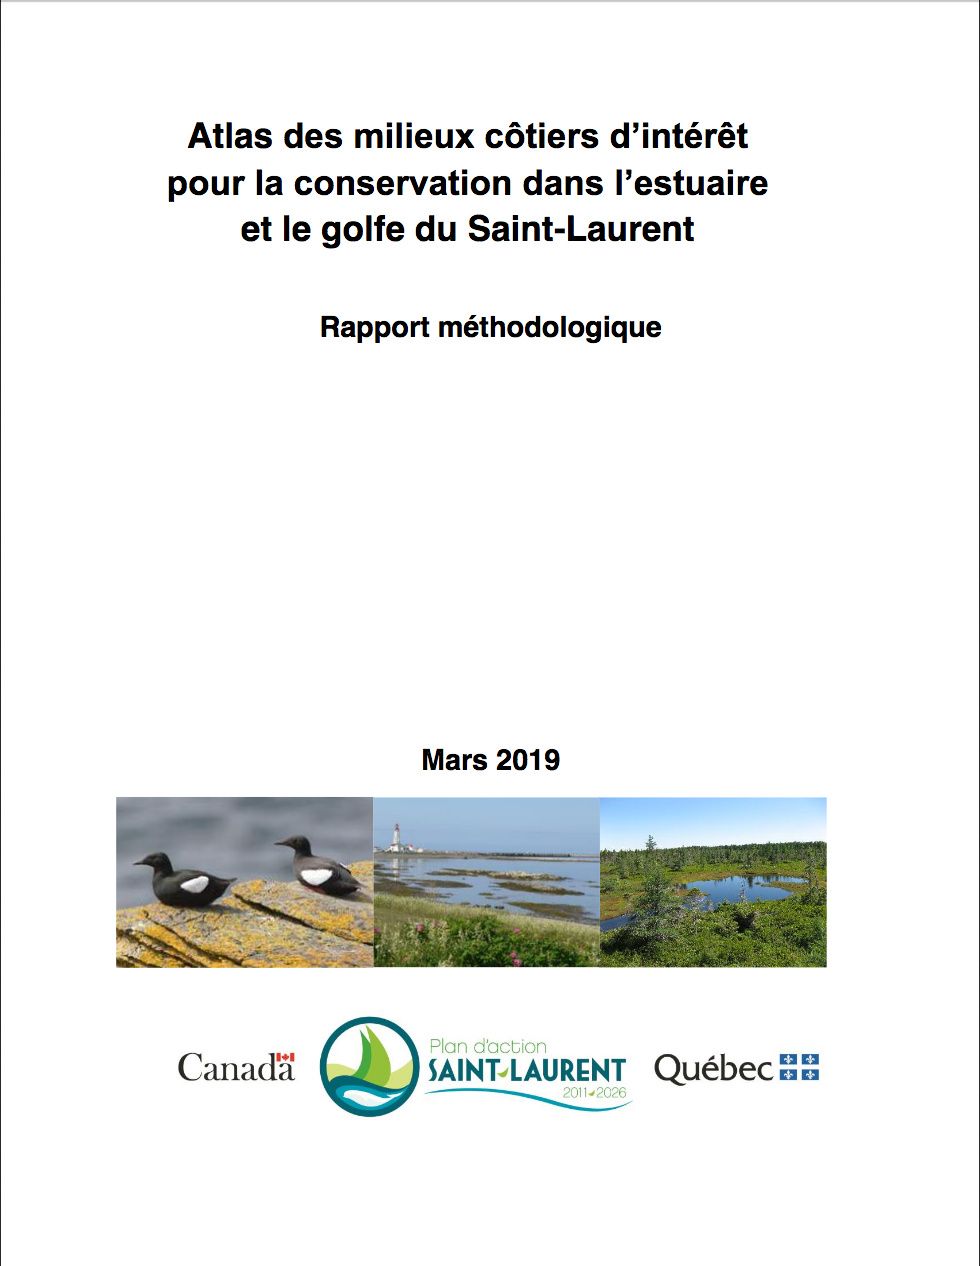 Atlas des milieux côtiers d’intérêt pour la conservation dans l’estuaire et le golf du Saint-Laurent